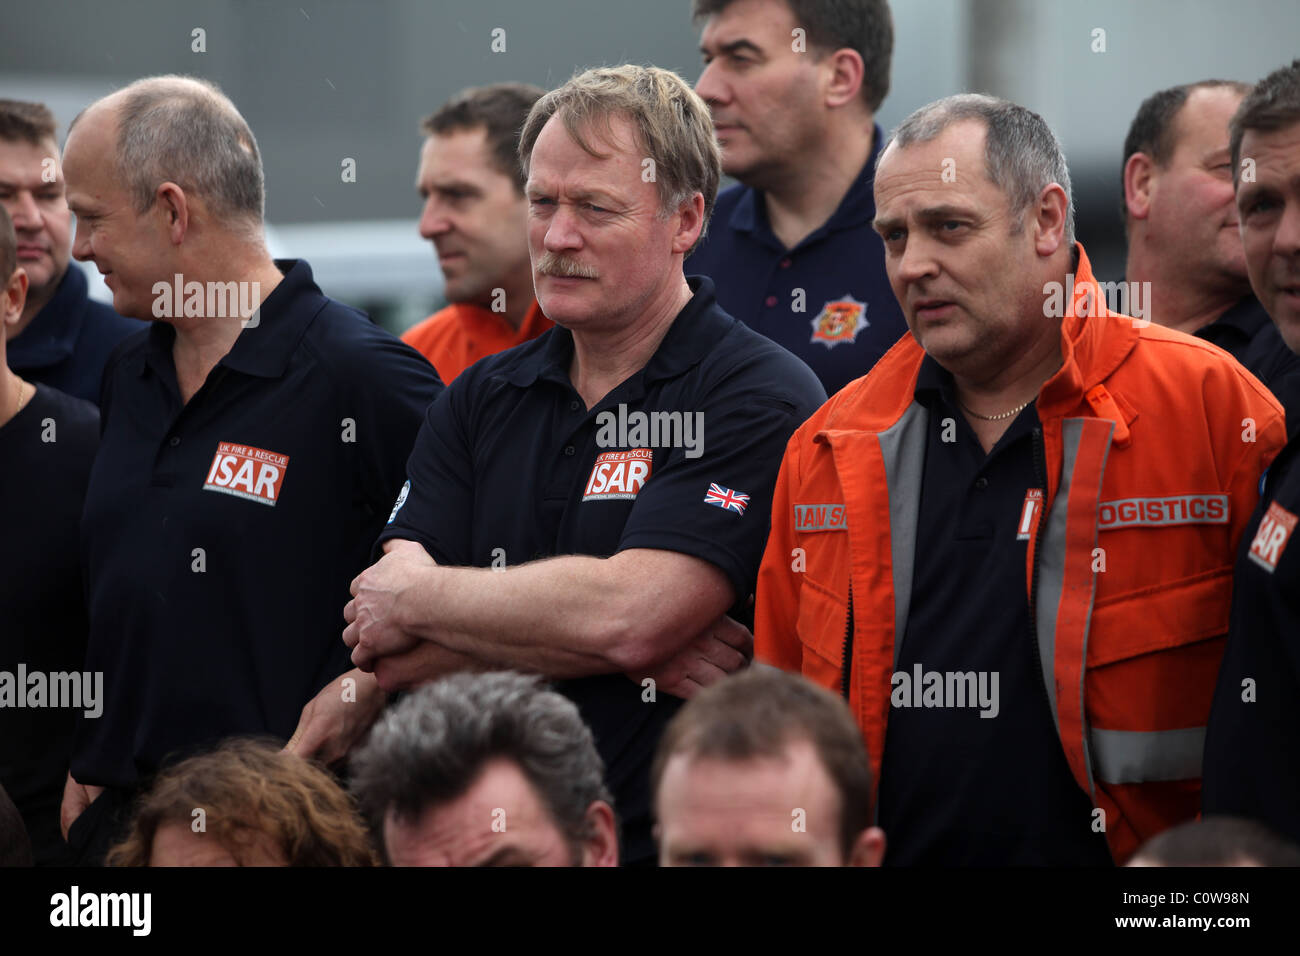 Membri della British ricerca urbana e la squadra di salvataggio arrivano all'aeroporto di Christchurch dopo il 6.3 terremoto di magnitudine. Foto Stock